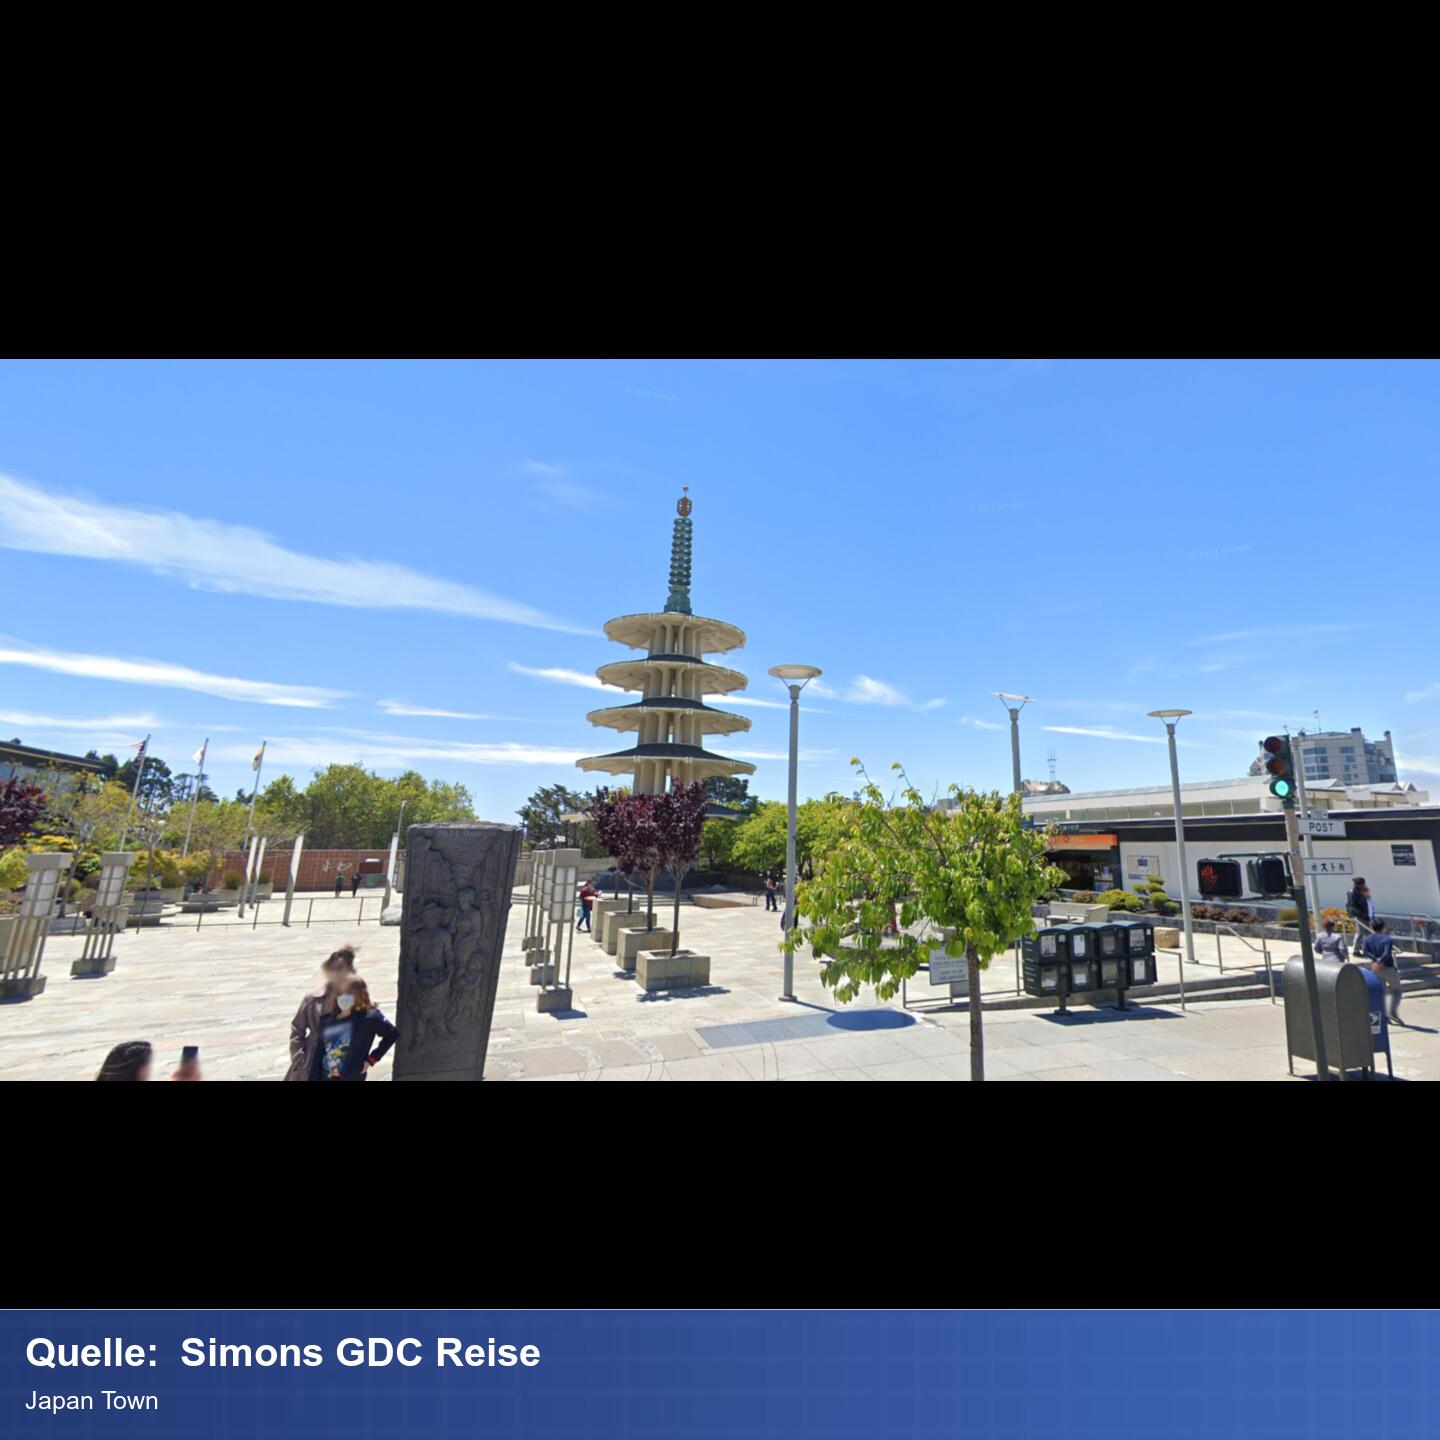 Platz vor einer Mall mit einem japanischen Turm Tempel